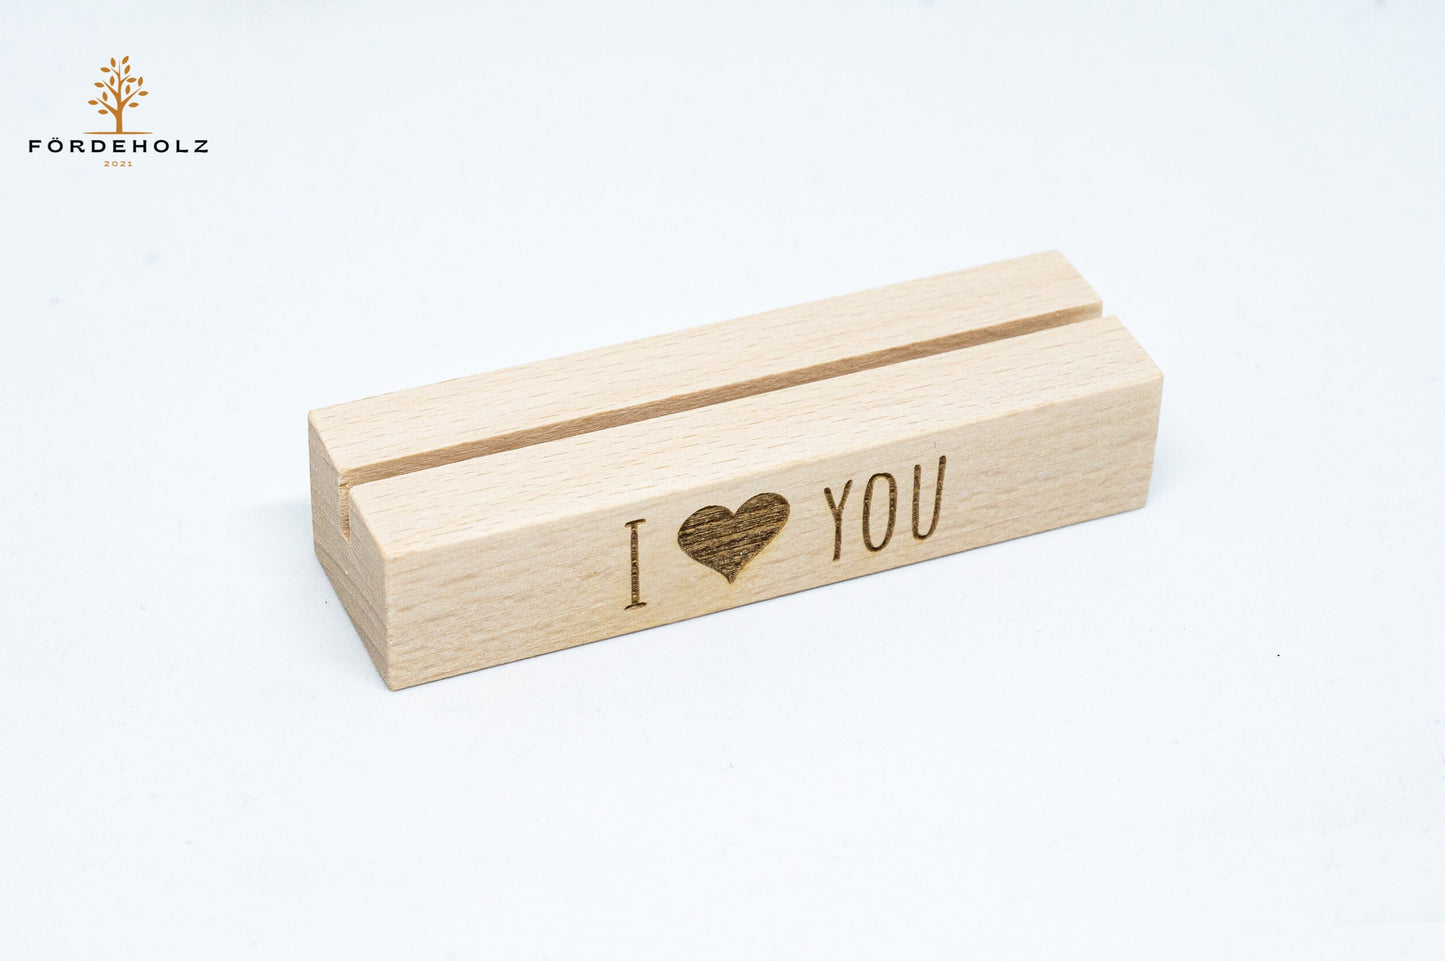 Foto- und Kartenhalter aus Holz, Holzkartenhalter, Kartenaufsteller, Buchenholz "I love you" - Geschenk Valentinstag, Hochzeit, Verlobung